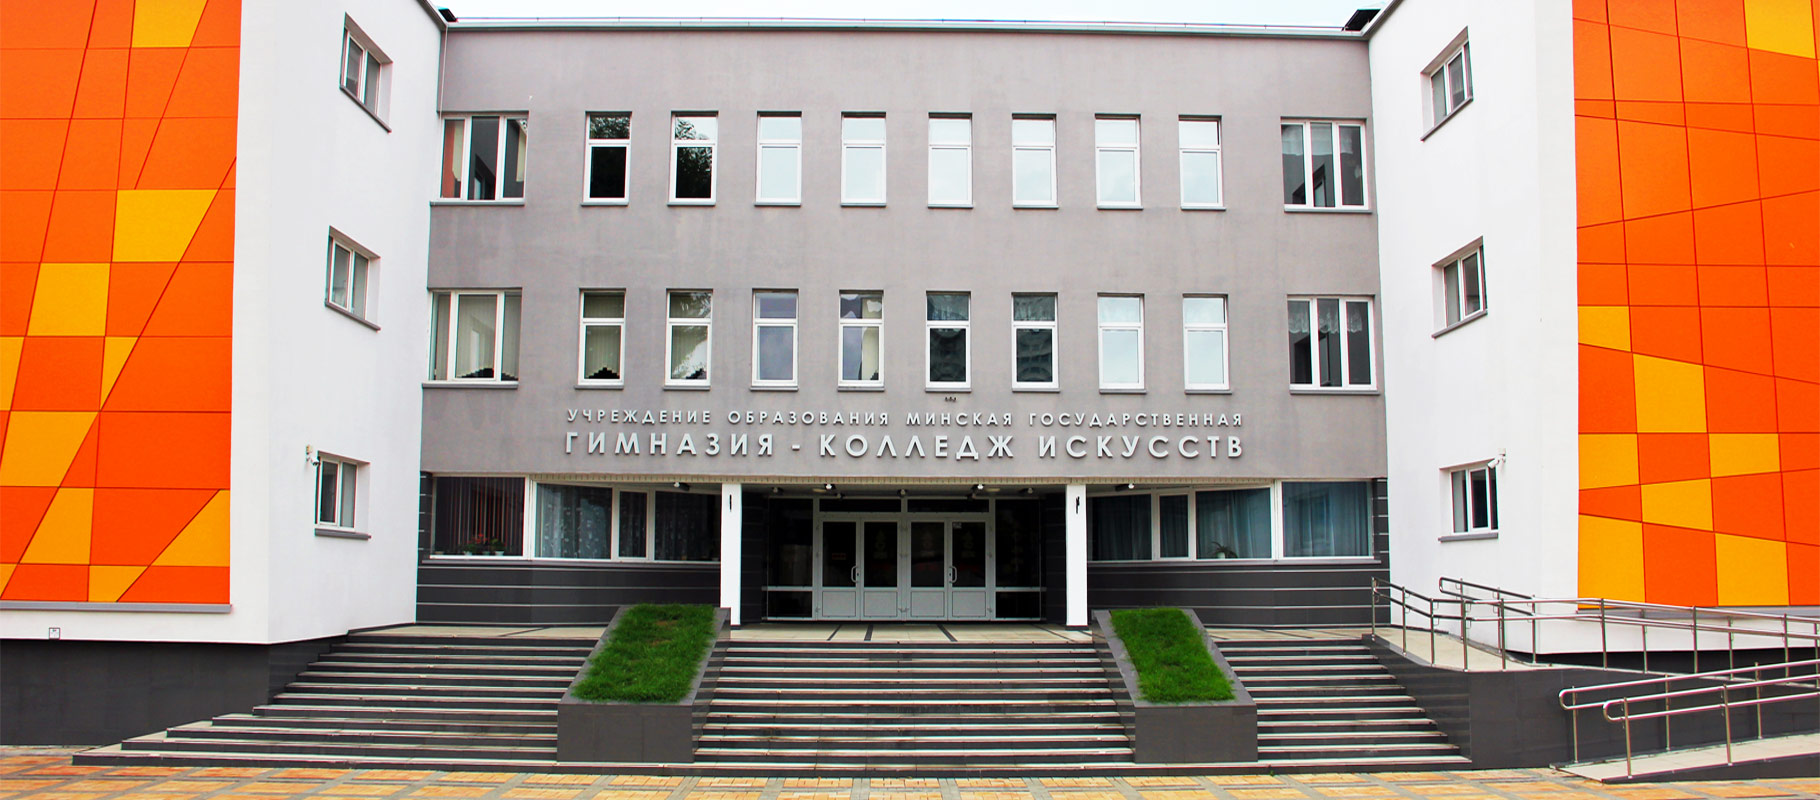 Минская государственная гимназия-колледж искусств